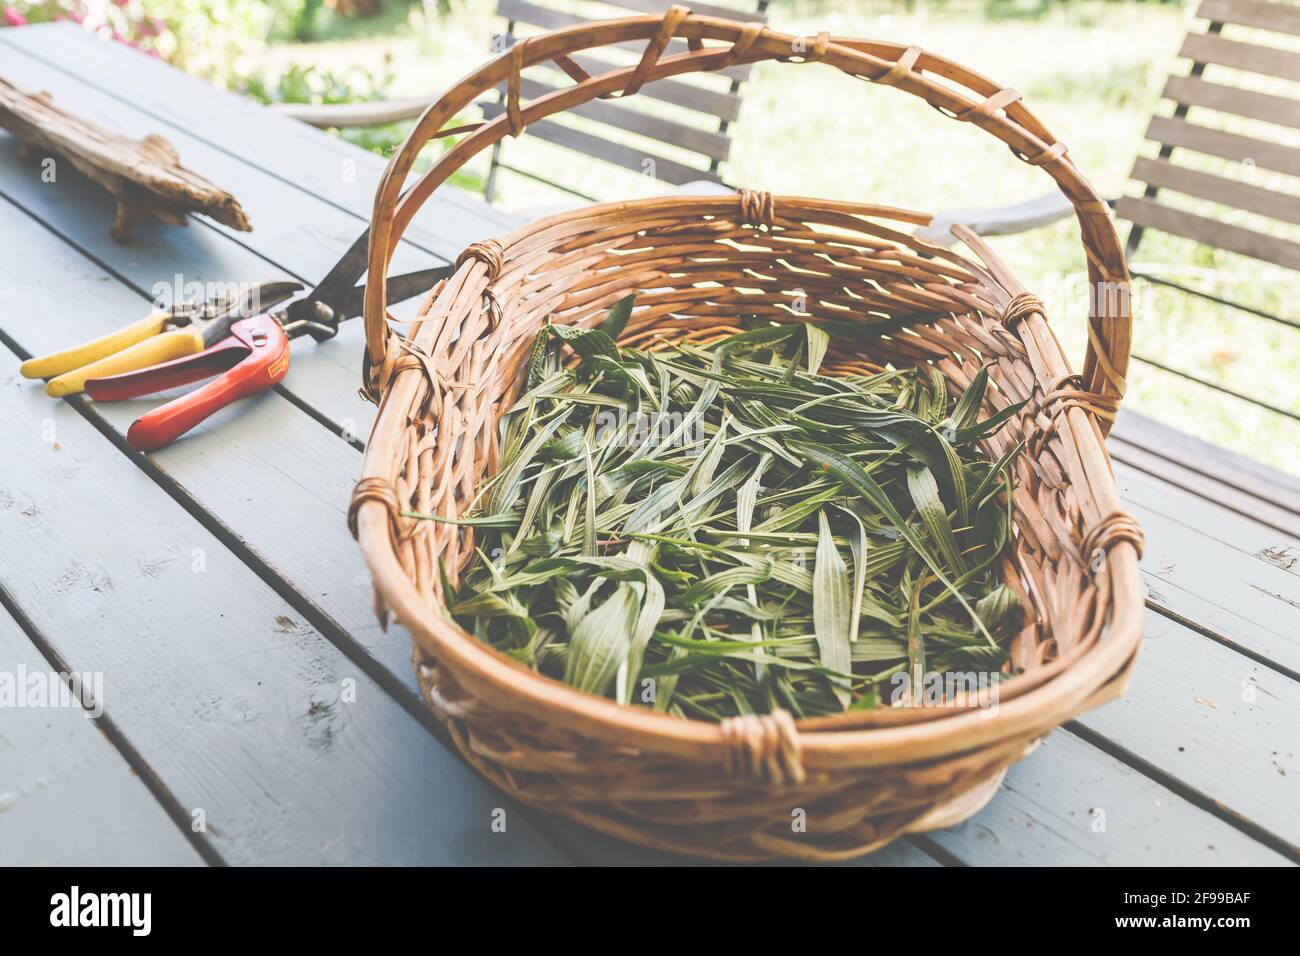 Ribwort plantain - un'erba medicinale che mitiga l'irritazione, può essere usato, per esempio, come un tè in naturopatia (Plantago lanceolata), kernelwort, foglia polmonare, lingua serpente Foto Stock